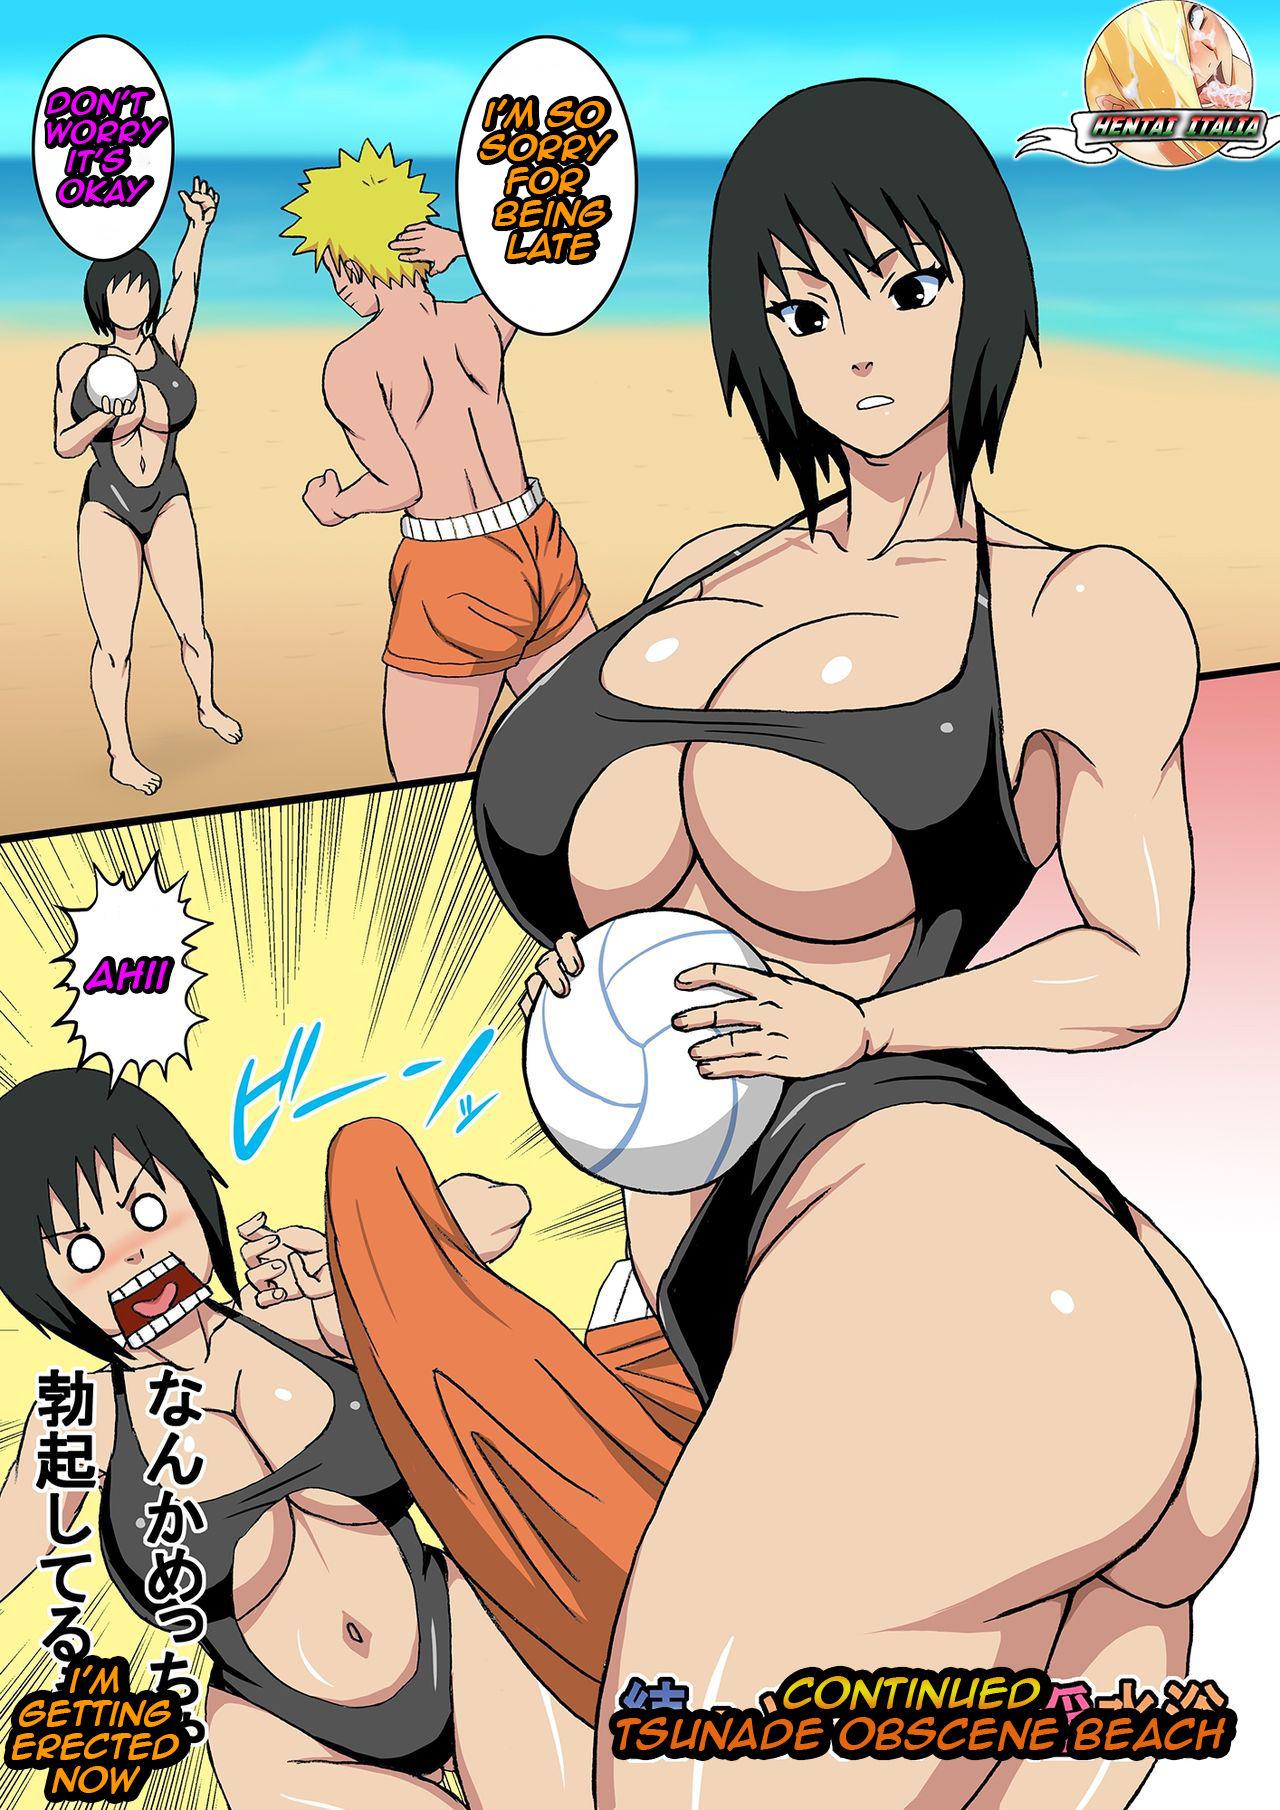 Culonas After Tsunade Beach - Naruto Hindi - Page 2